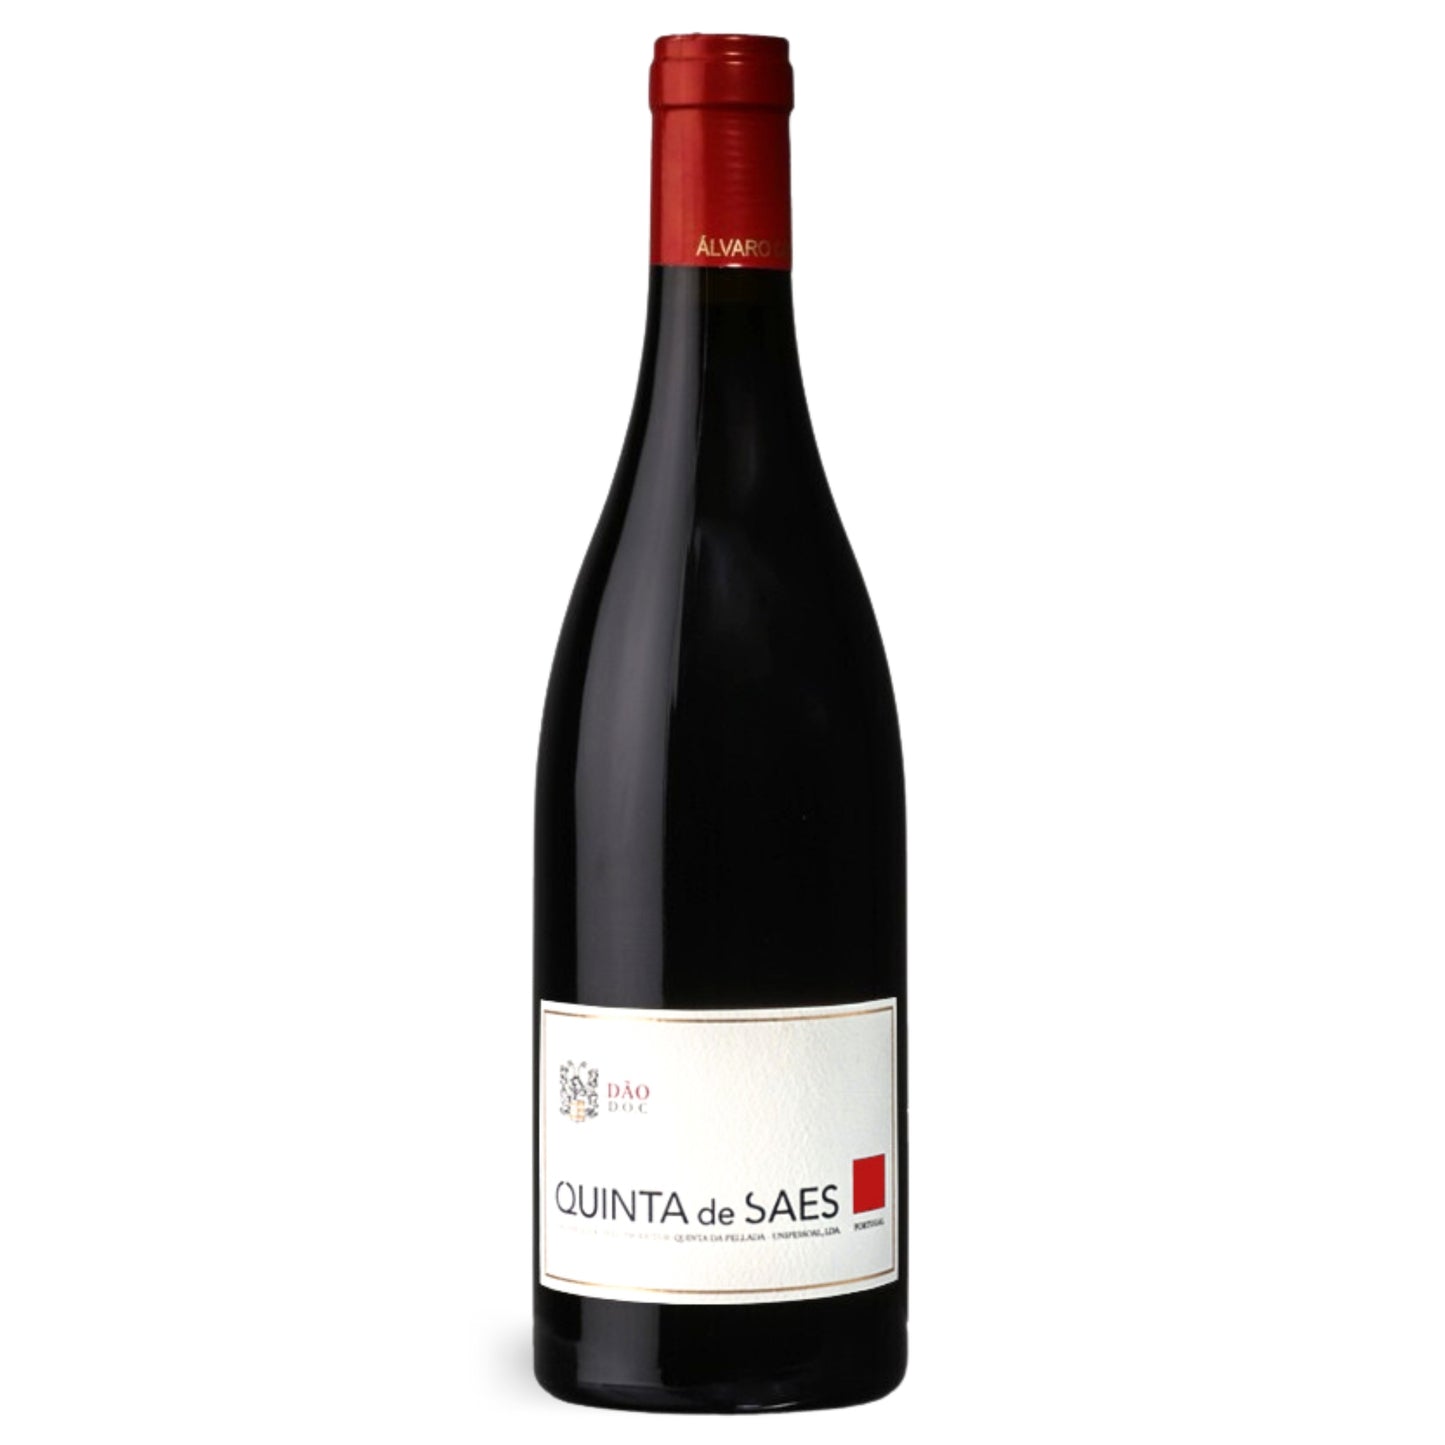 QUINTA DE SAES TINTO 2018, ein Rotwein der vom Weingut Álvaro Castro hergestellt wird. Erhältlich im Weinversand der Vinho Bar.